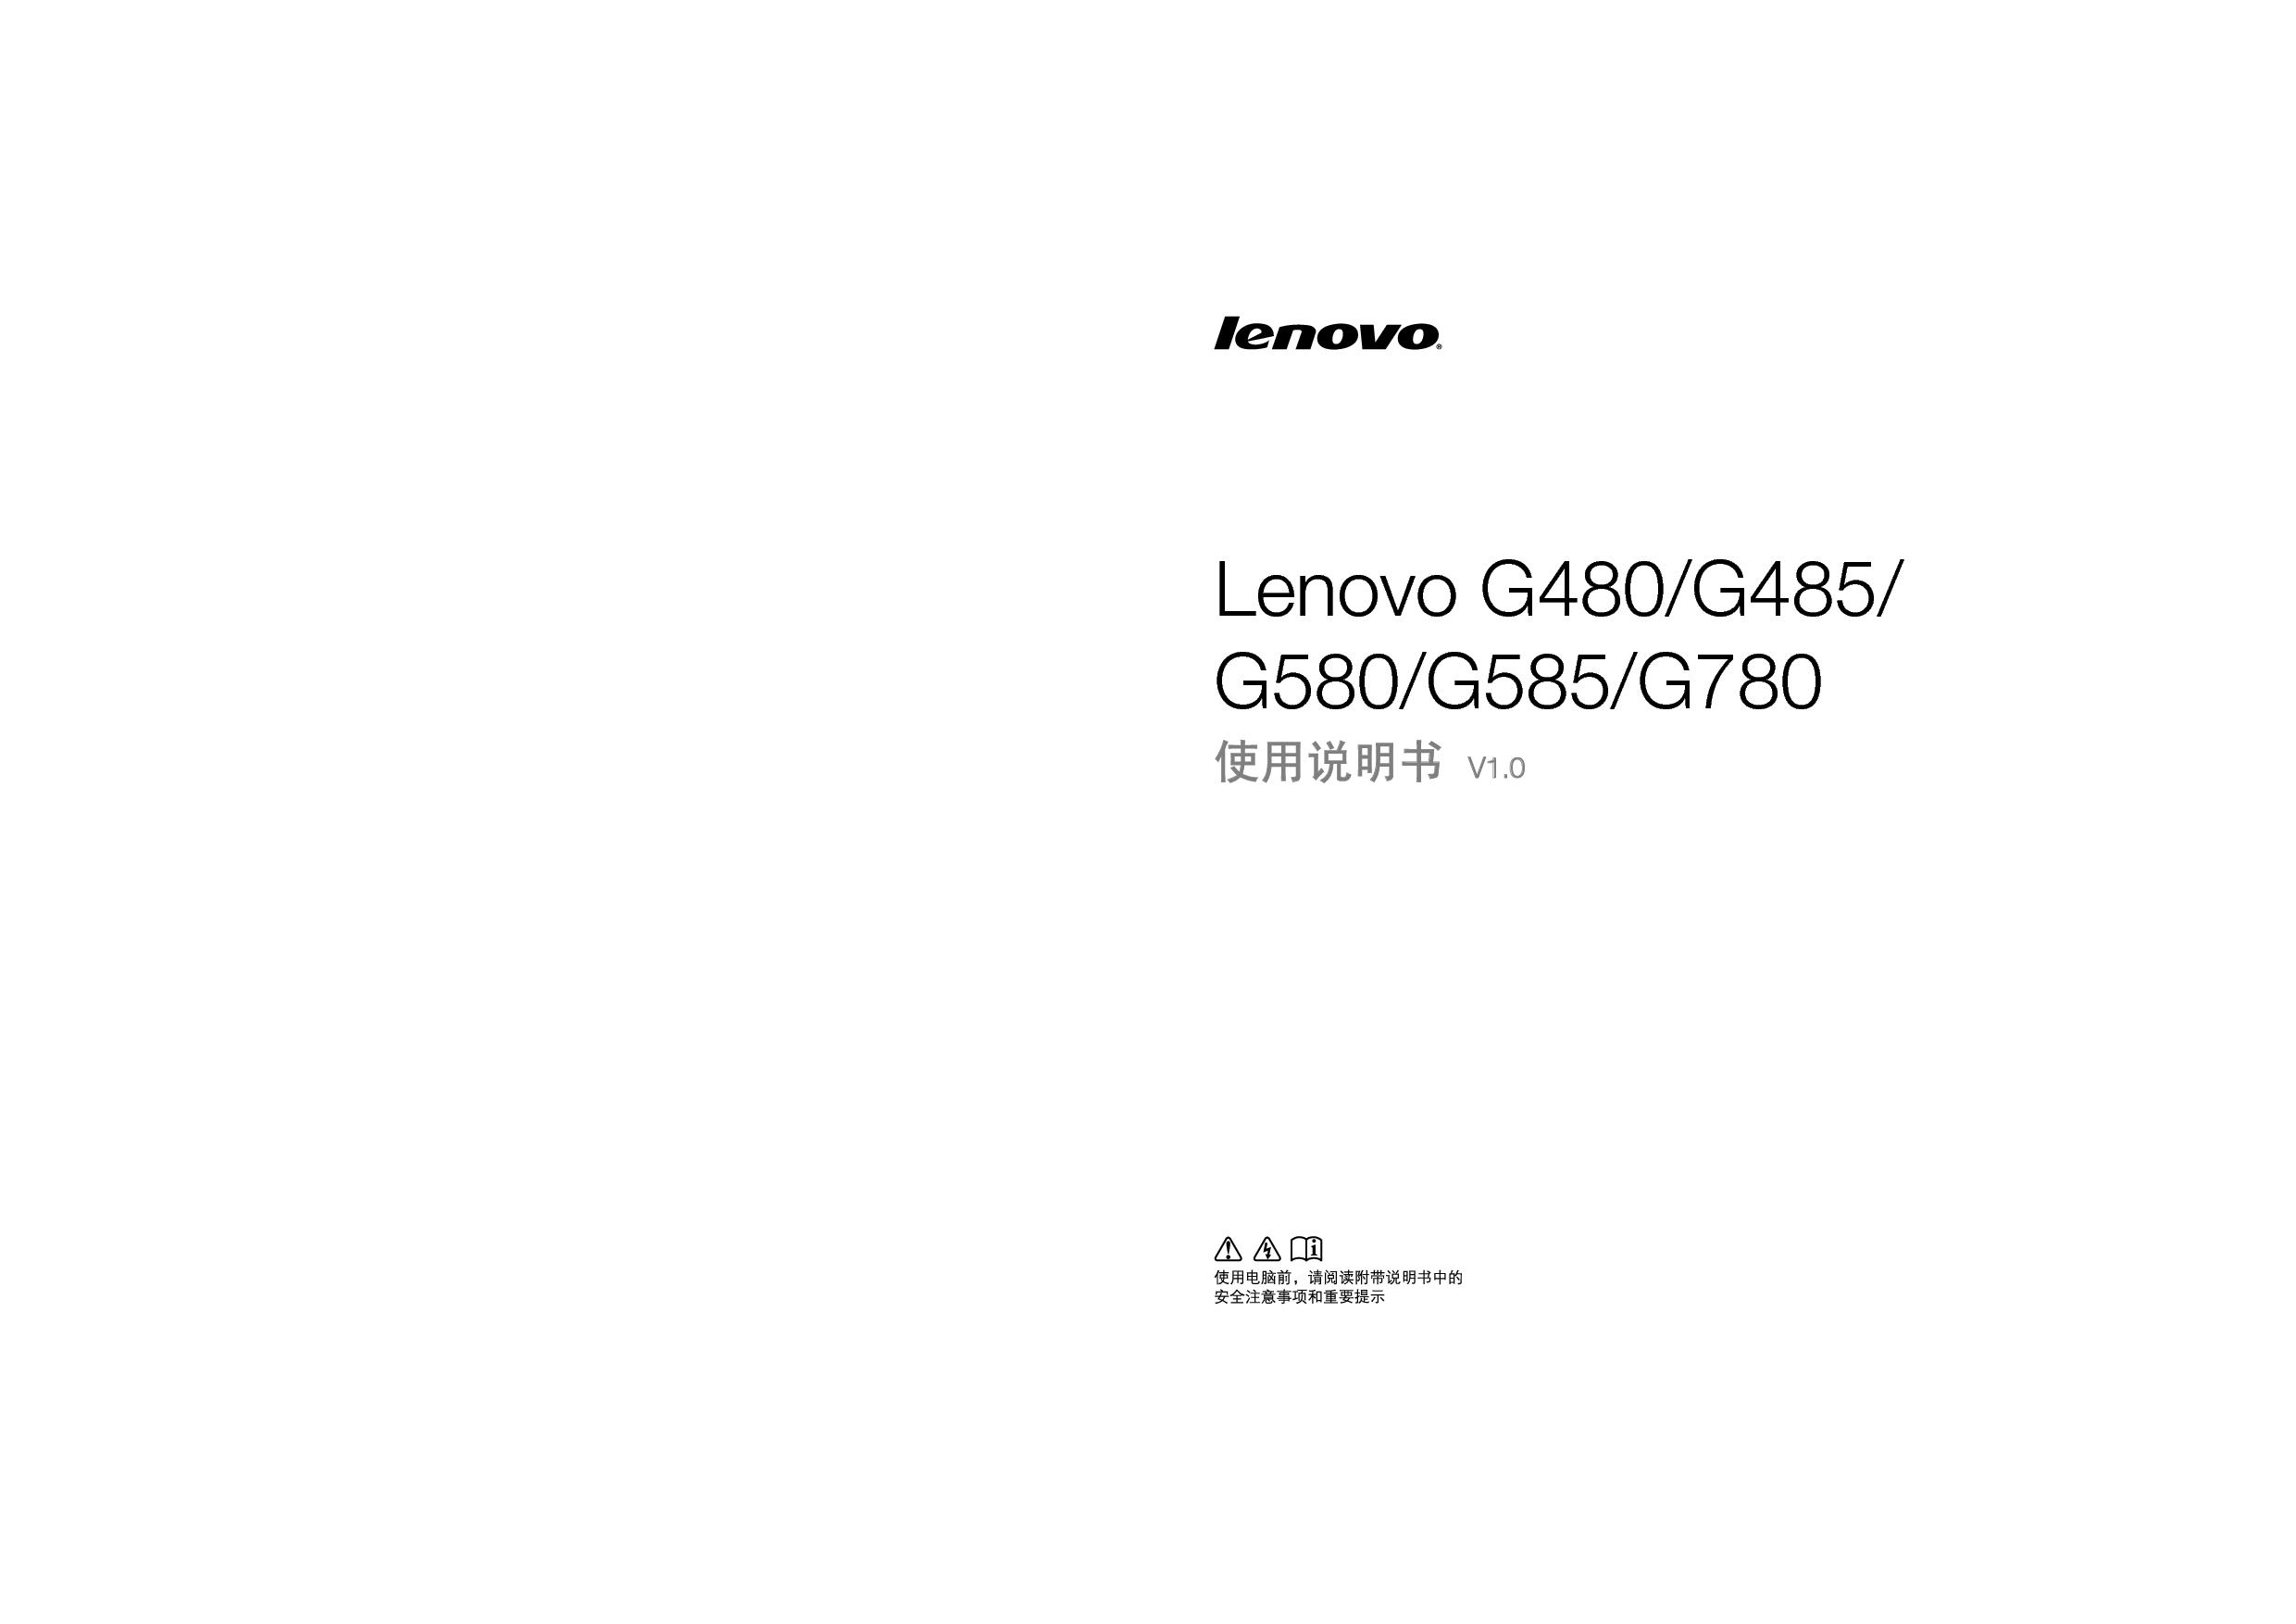 联想 Lenovo G480, G585 使用说明书 封面